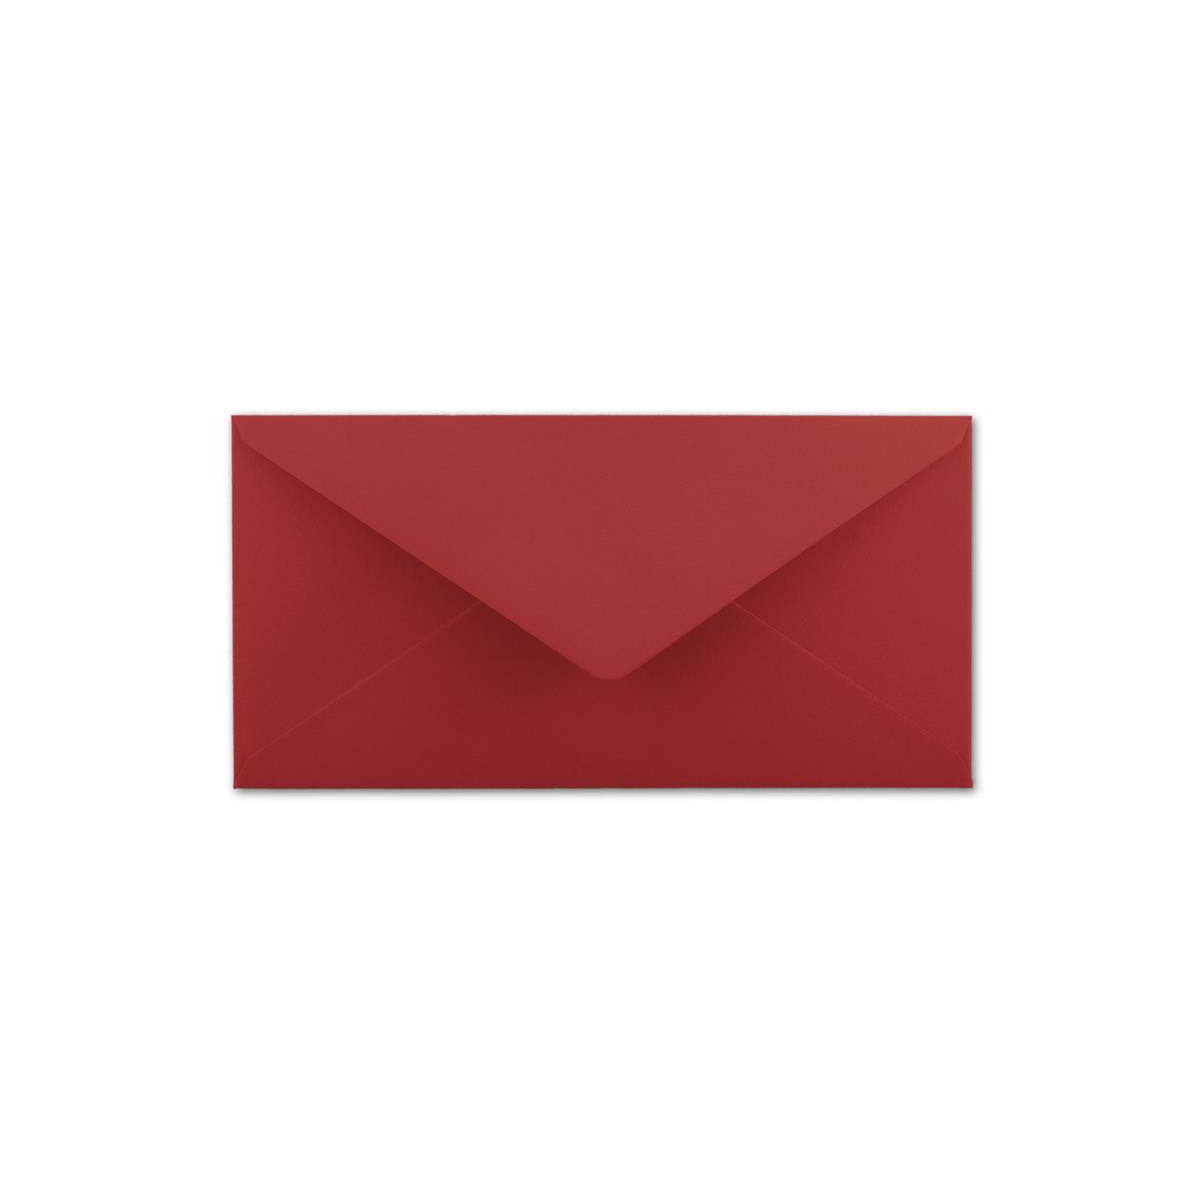 80 g//m/² Kuverts in DIN B6 Format 12,5 x 17,6 cm Nassklebung ohne Fenster 25x Brief-Umschl/äge leuchtendes Rot